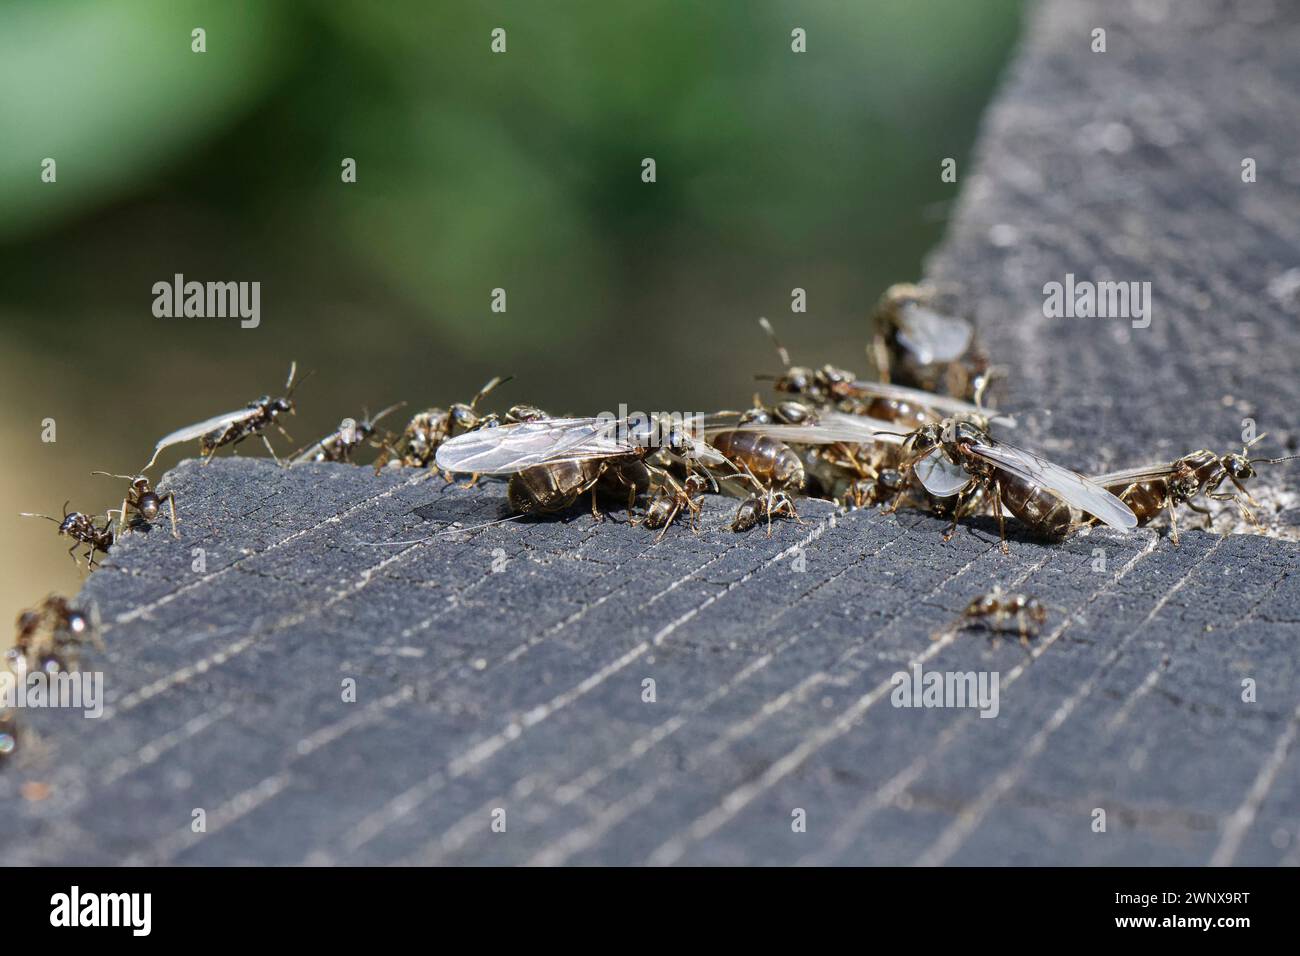 Hormiga de jardín negra (Lasius niger), obreros sin alas, alatos machos alados y alatos femeninos más grandes o reinas que se reúnen en durmientes de madera al salir del nido. Foto de stock